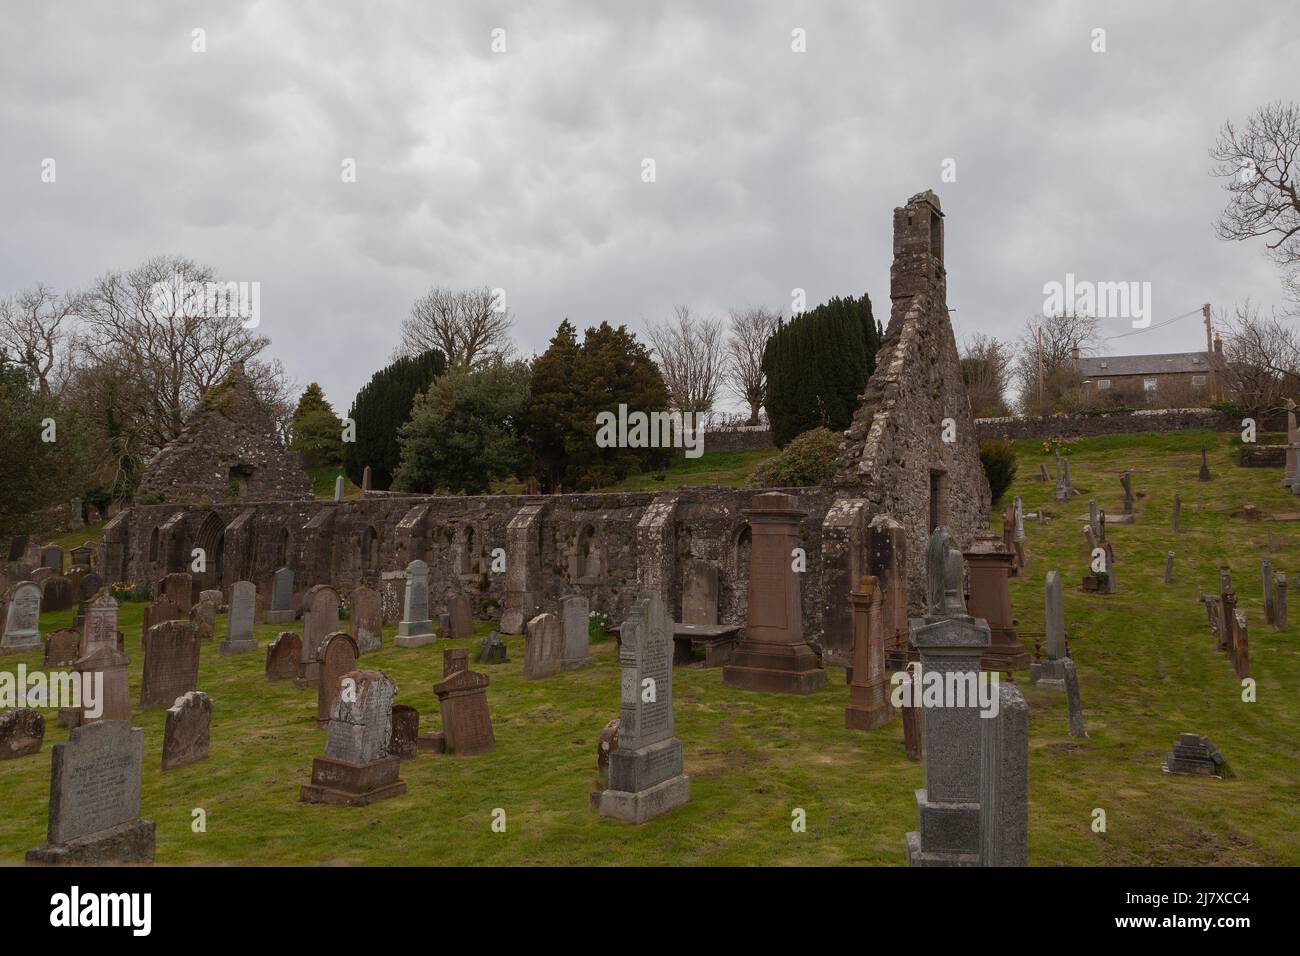 Kirkoswald Old Chruch, Ayrshire, Scotlamd, Großbritannien: Begräbnisstätte vieler berühmter Persönlichkeiten, die im Robert Burns-Gedicht Tam 0'Shanter verewigt wurden Stockfoto